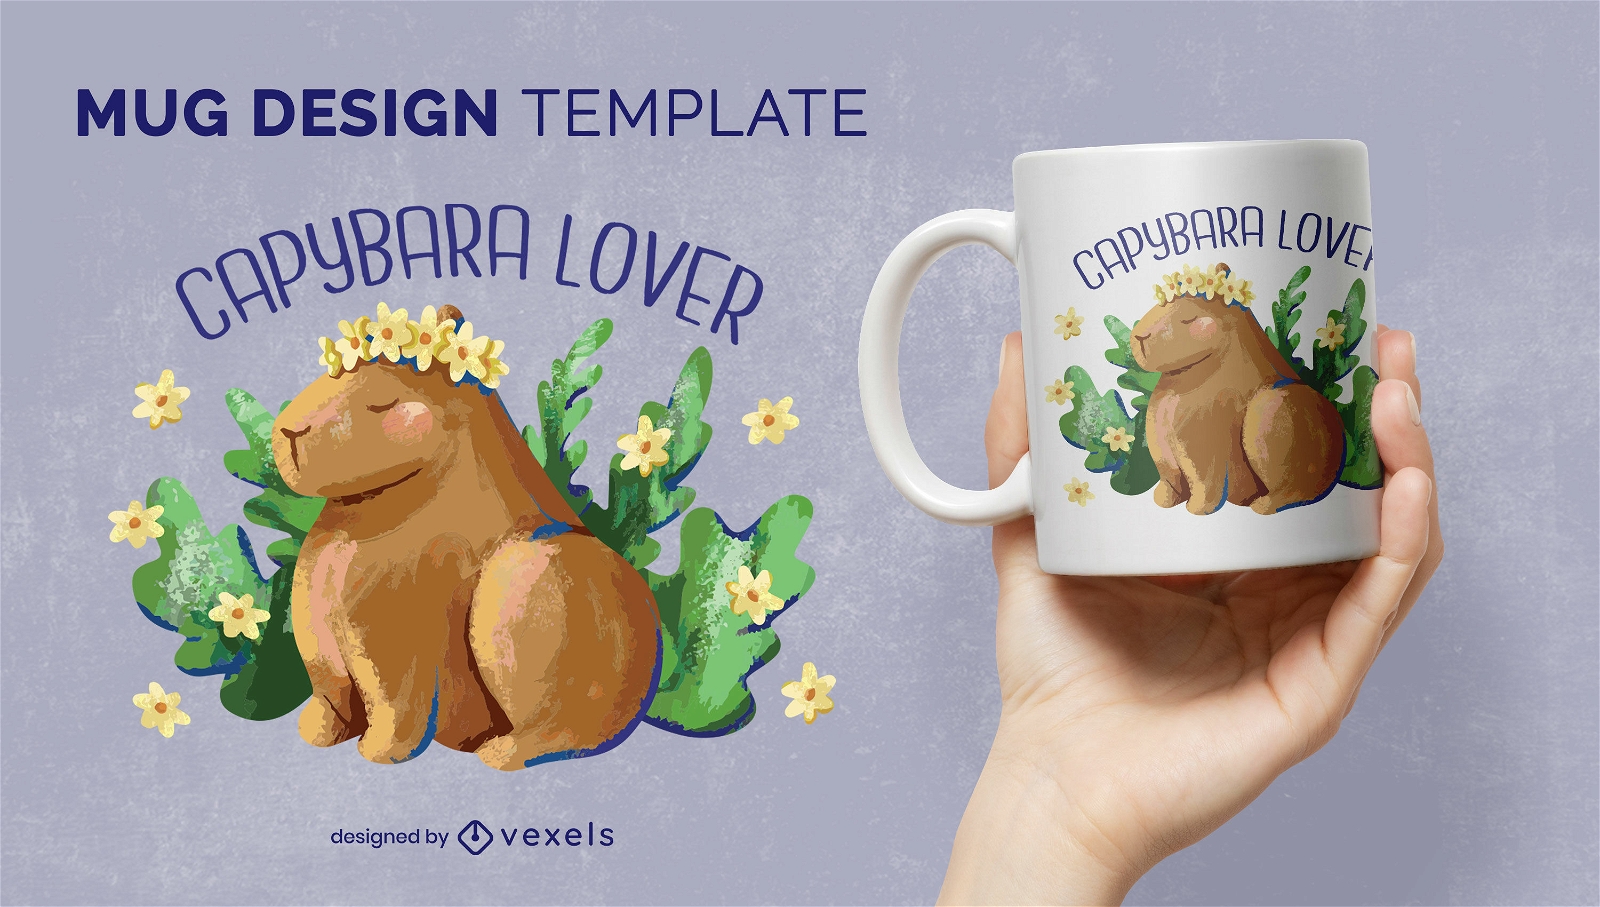 Capybara lover mug design